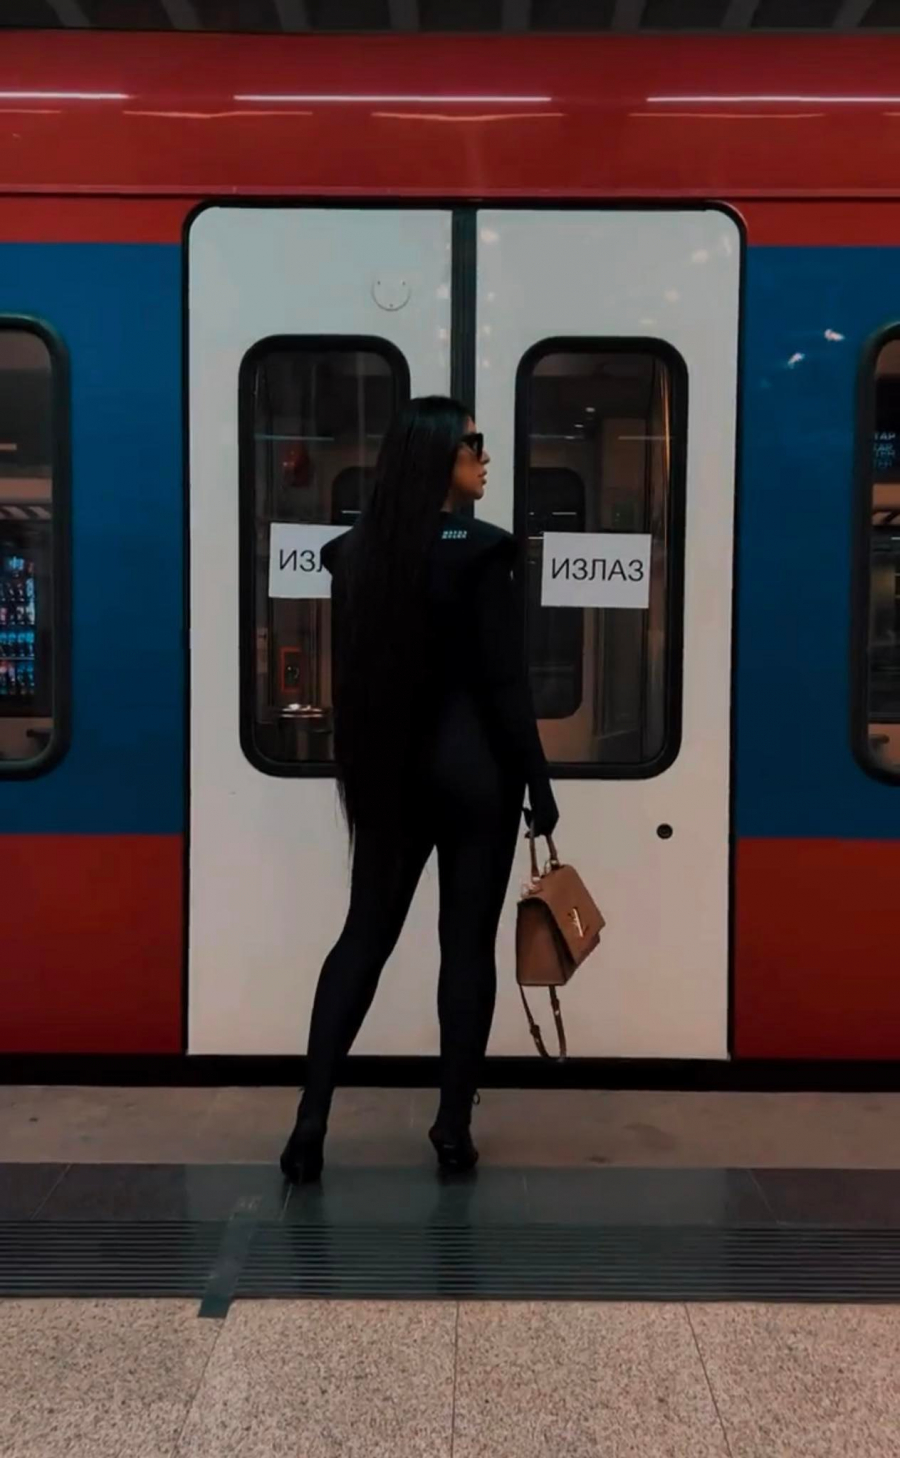 BRŽE OD OVOGA NISAM MOGLA Seka Aleksić sinoć je na nastup otišla brzim vozom: Tako mi se žurilo u Novi Sad (FOTO+VIDEO)